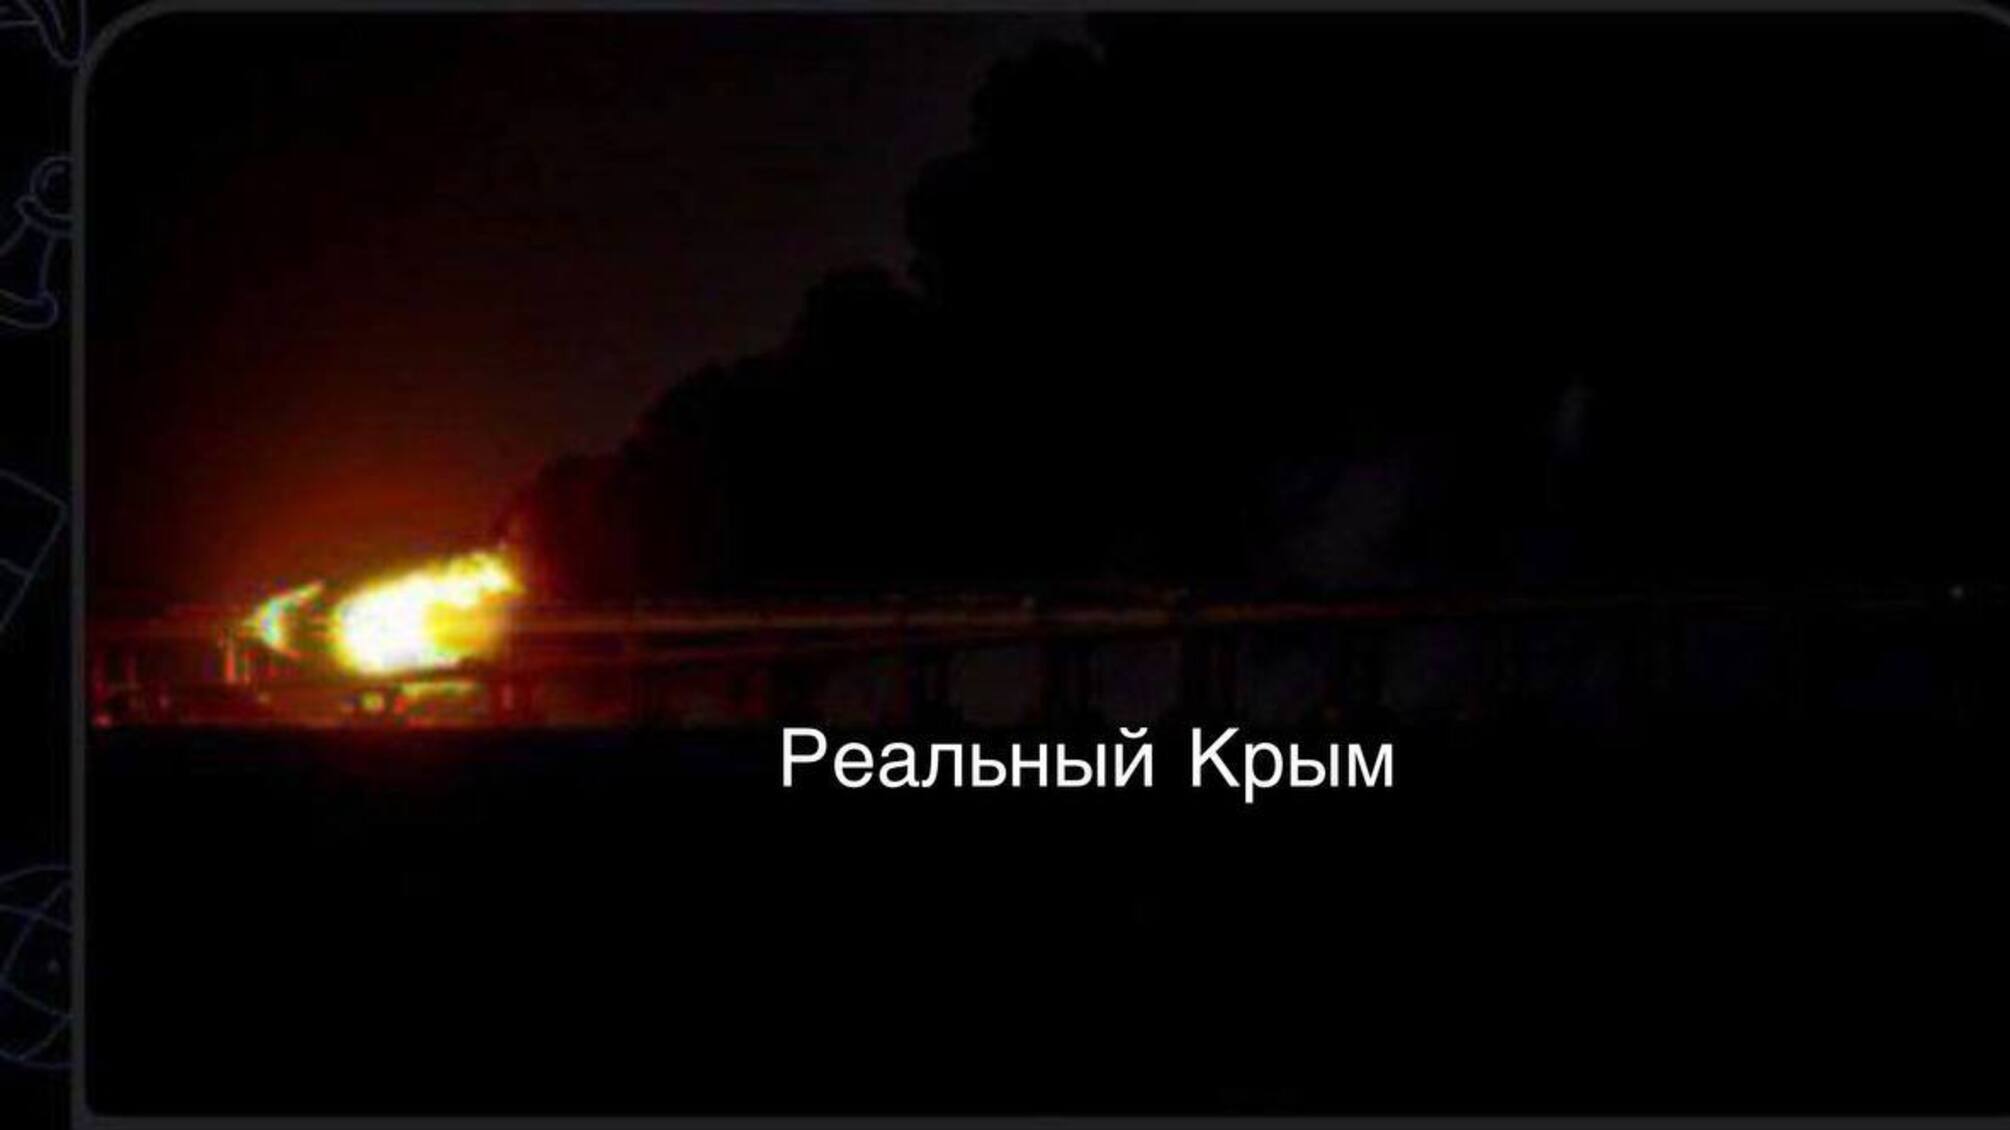 Крымский мост перекрывали из-за взрывов в Керчи, пострадали паромы